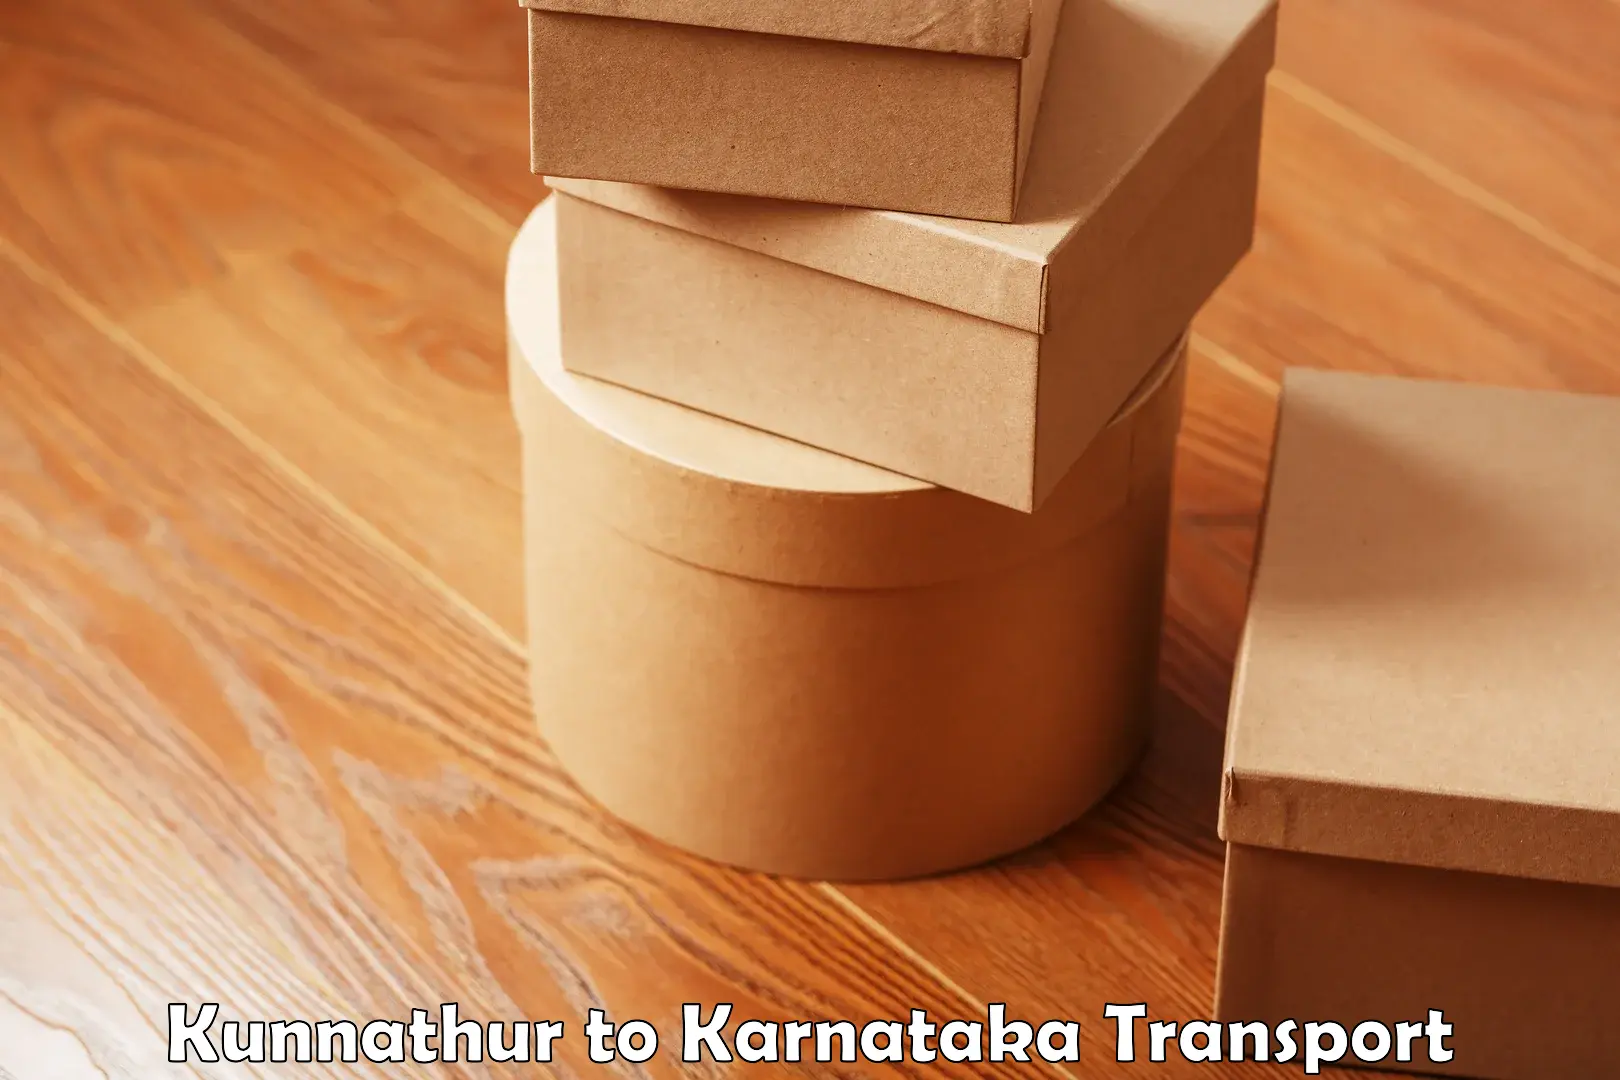 Nearest transport service Kunnathur to Karkala